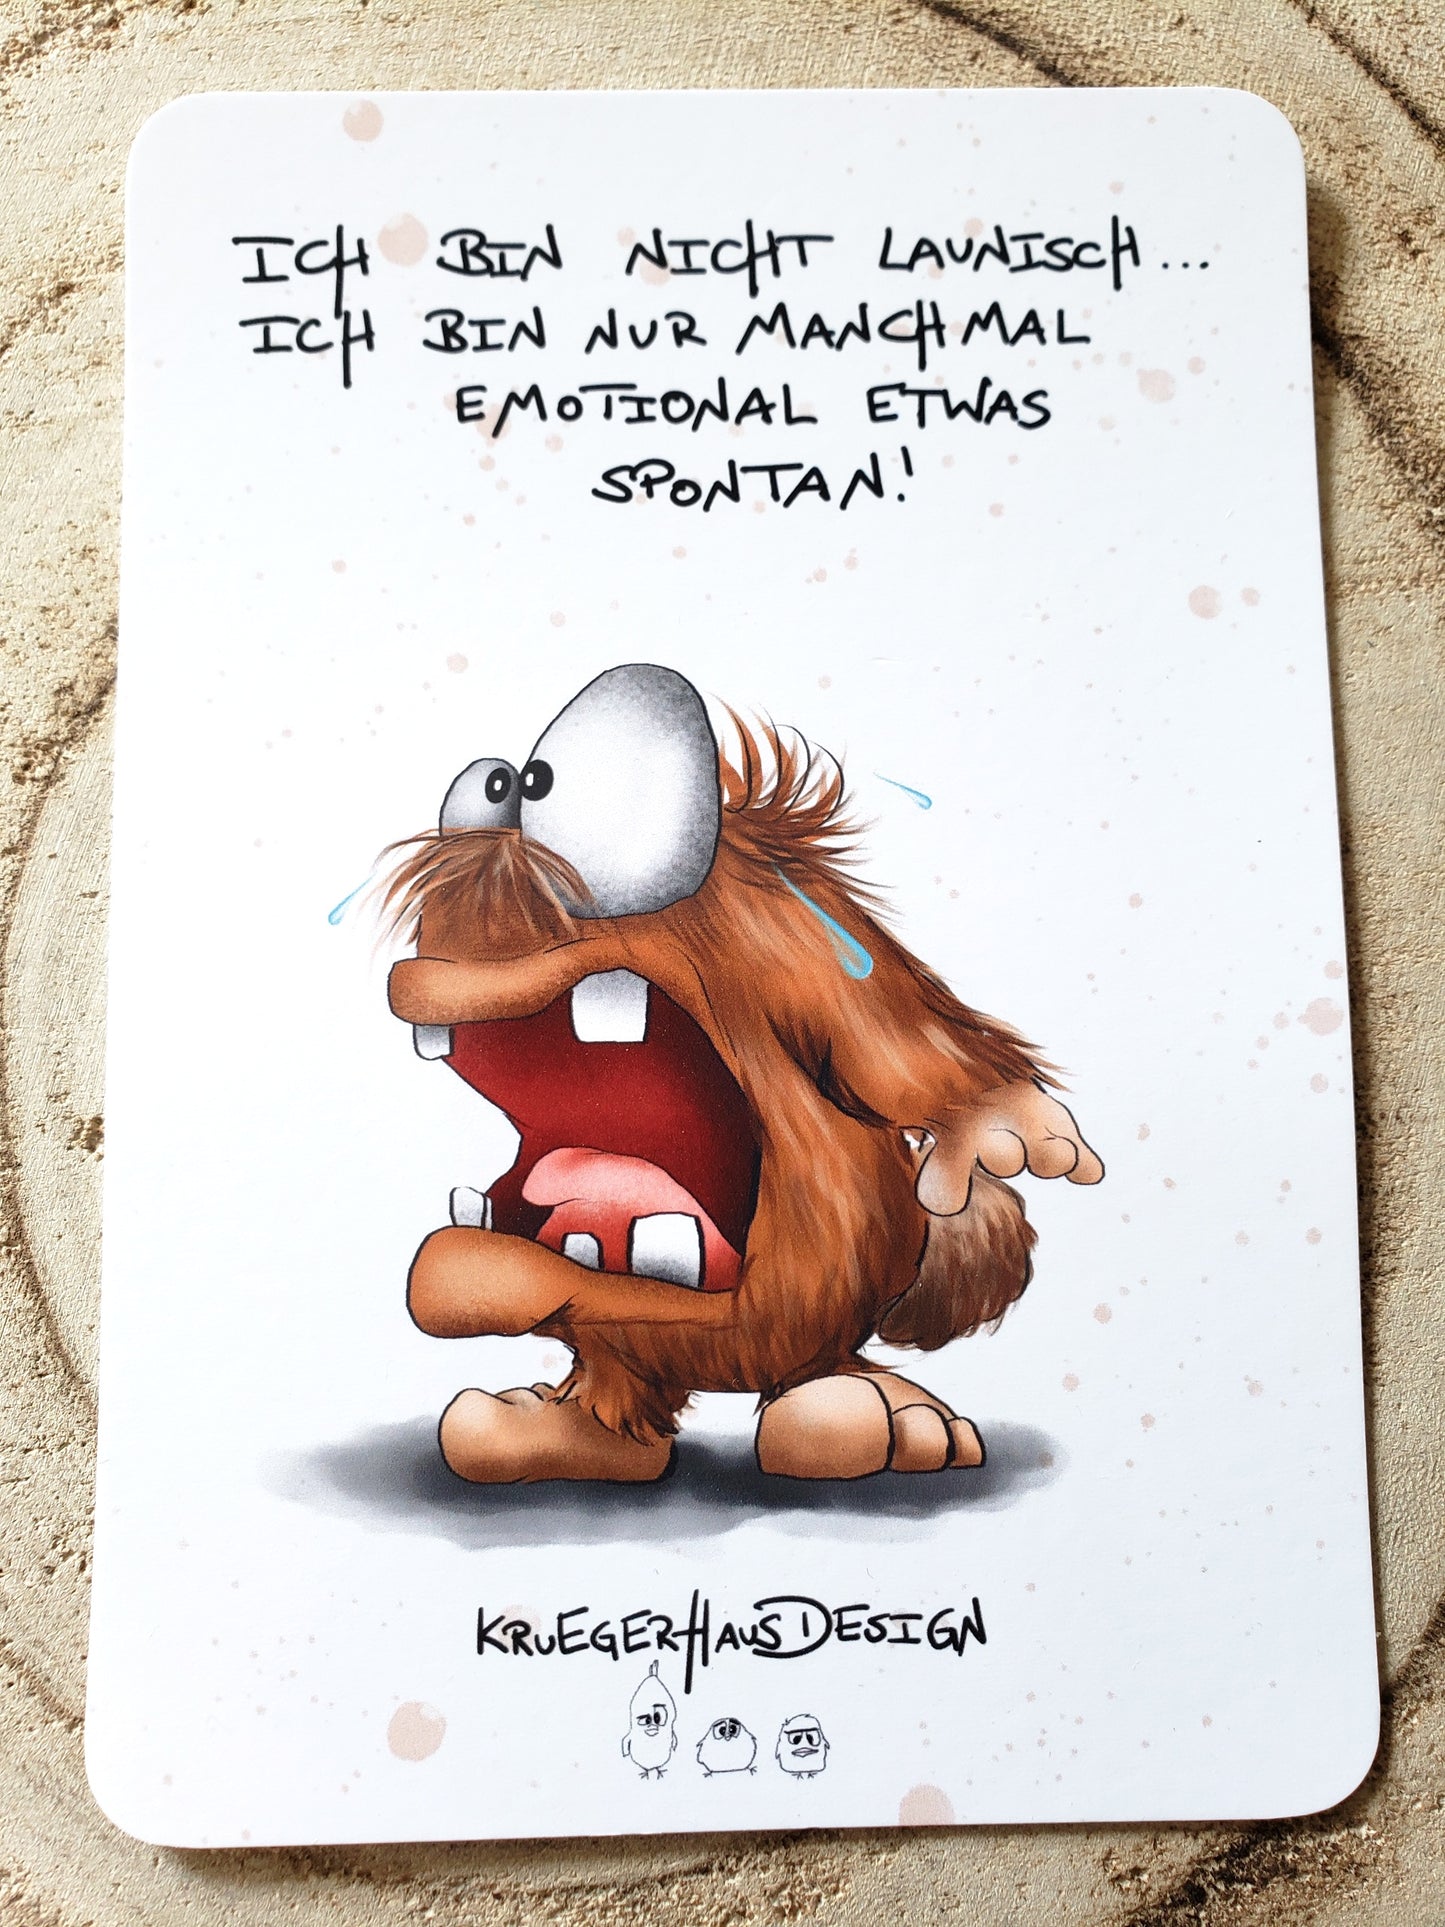 Postkarte Monster Kruegerhausdesign mit Spruch "Ich bin nicht launisch..."